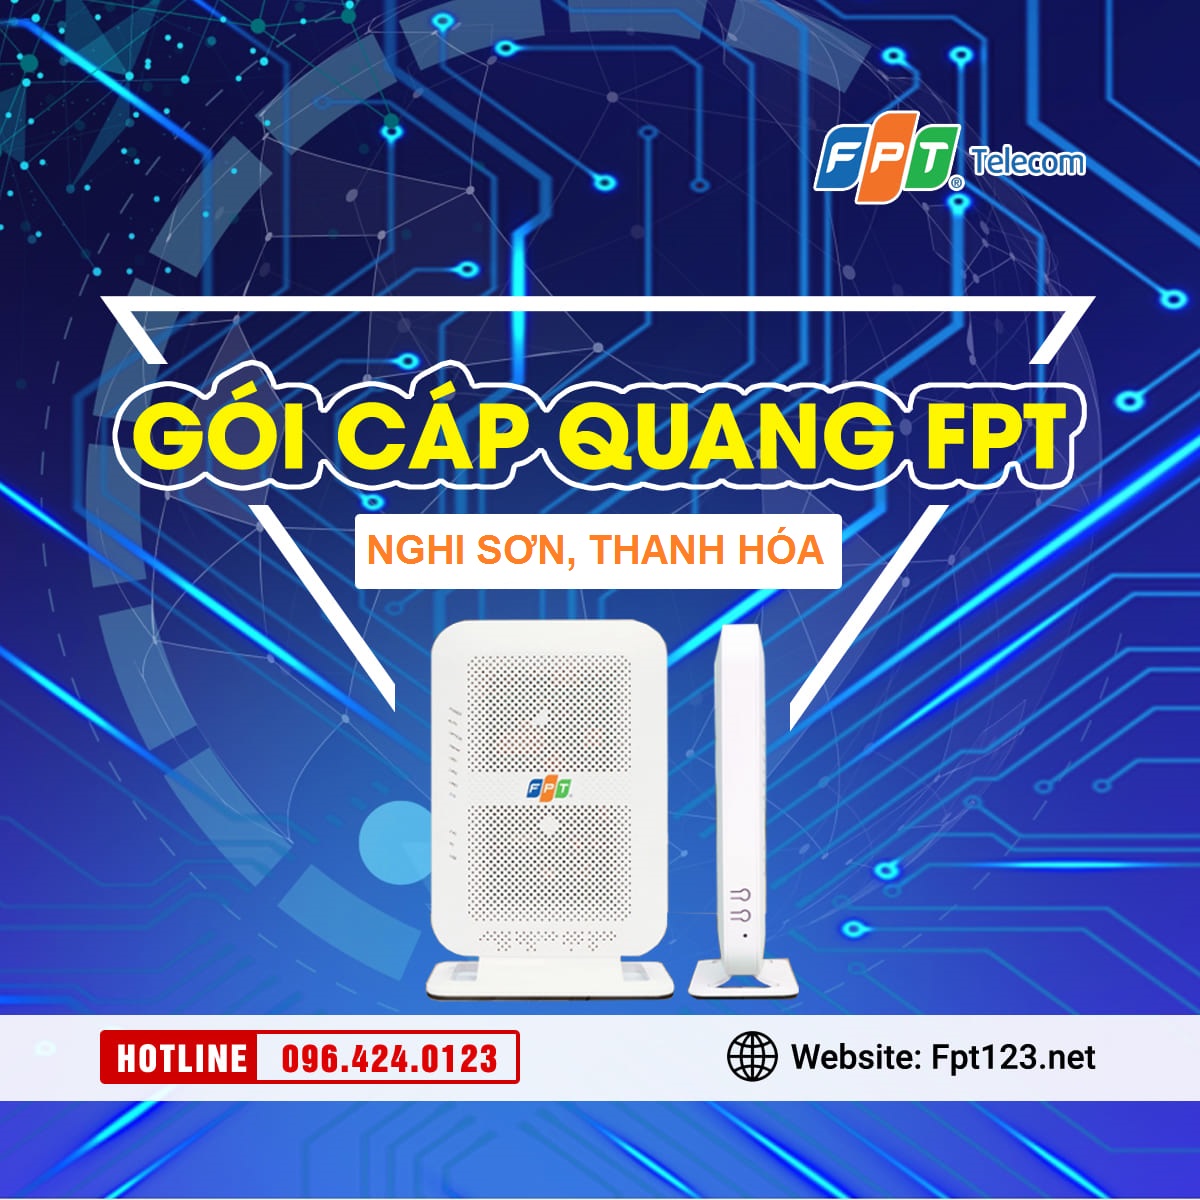 Lắp mạng cáp quang FPT xã Hải Yến, Nghi Sơn, Thanh Hóa